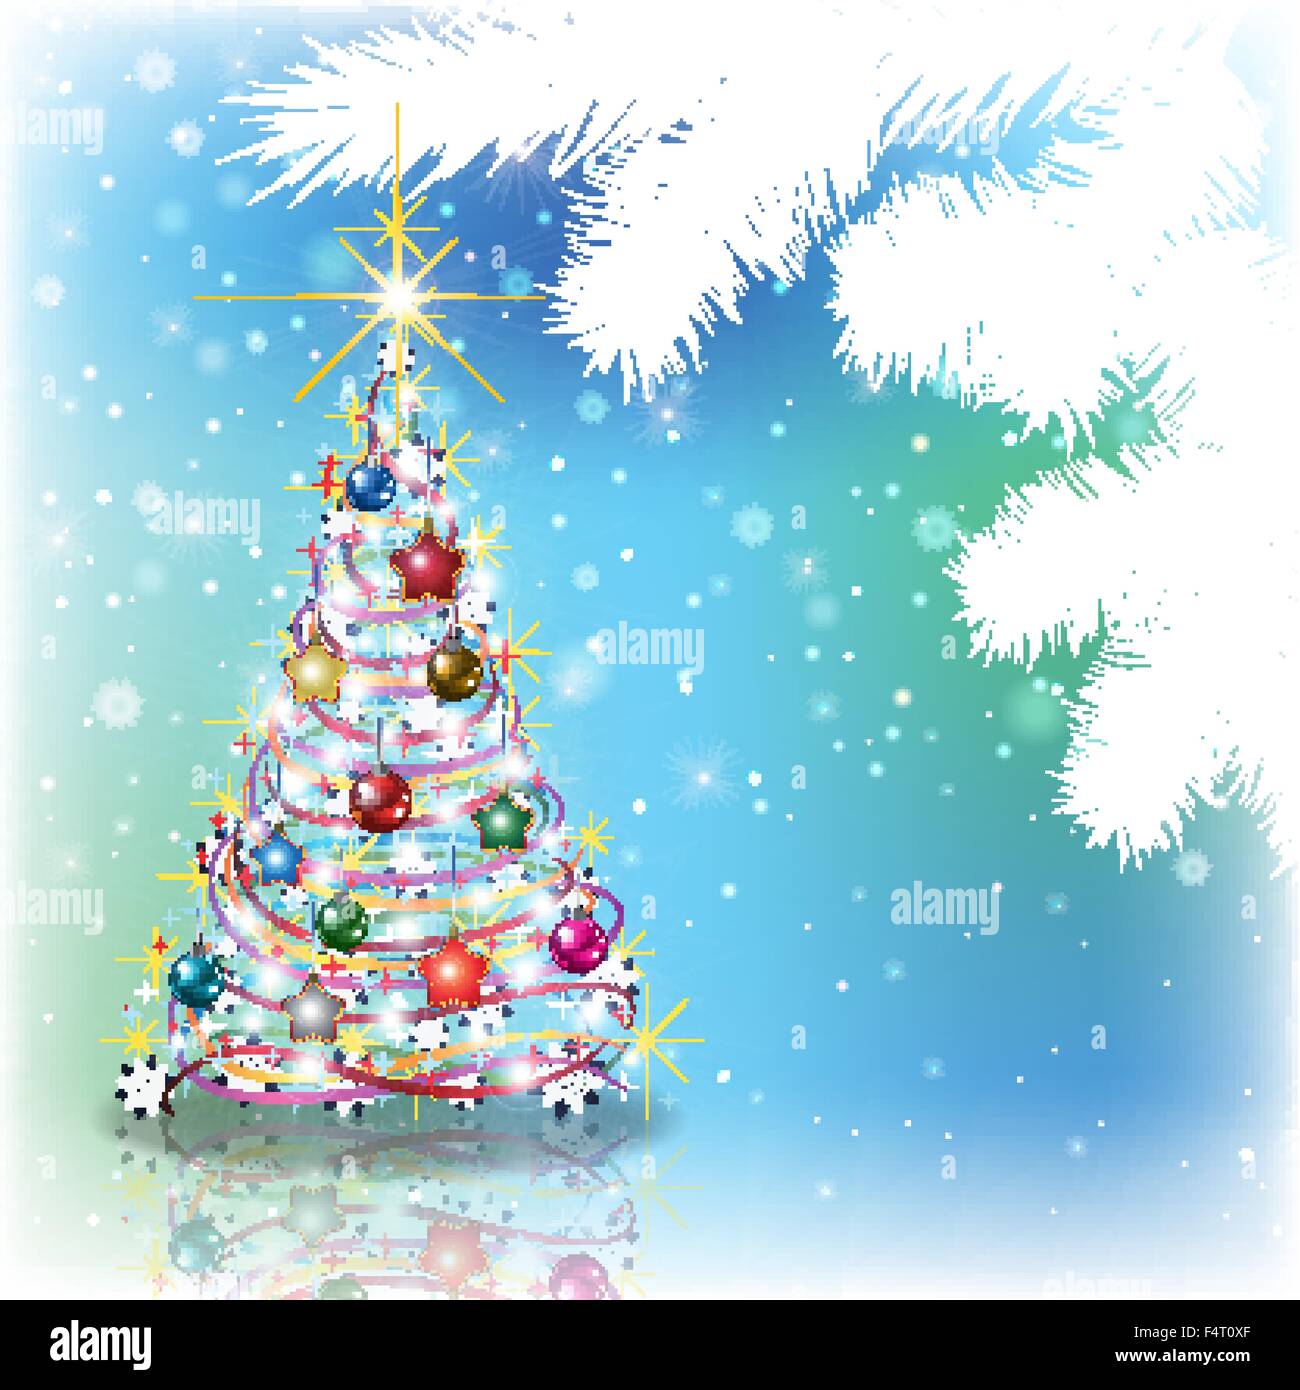 Sfondi Alberi Natalizi.Abstract Sfondo Blu Con Albero Di Natale E Decorazioni Immagine E Vettoriale Alamy